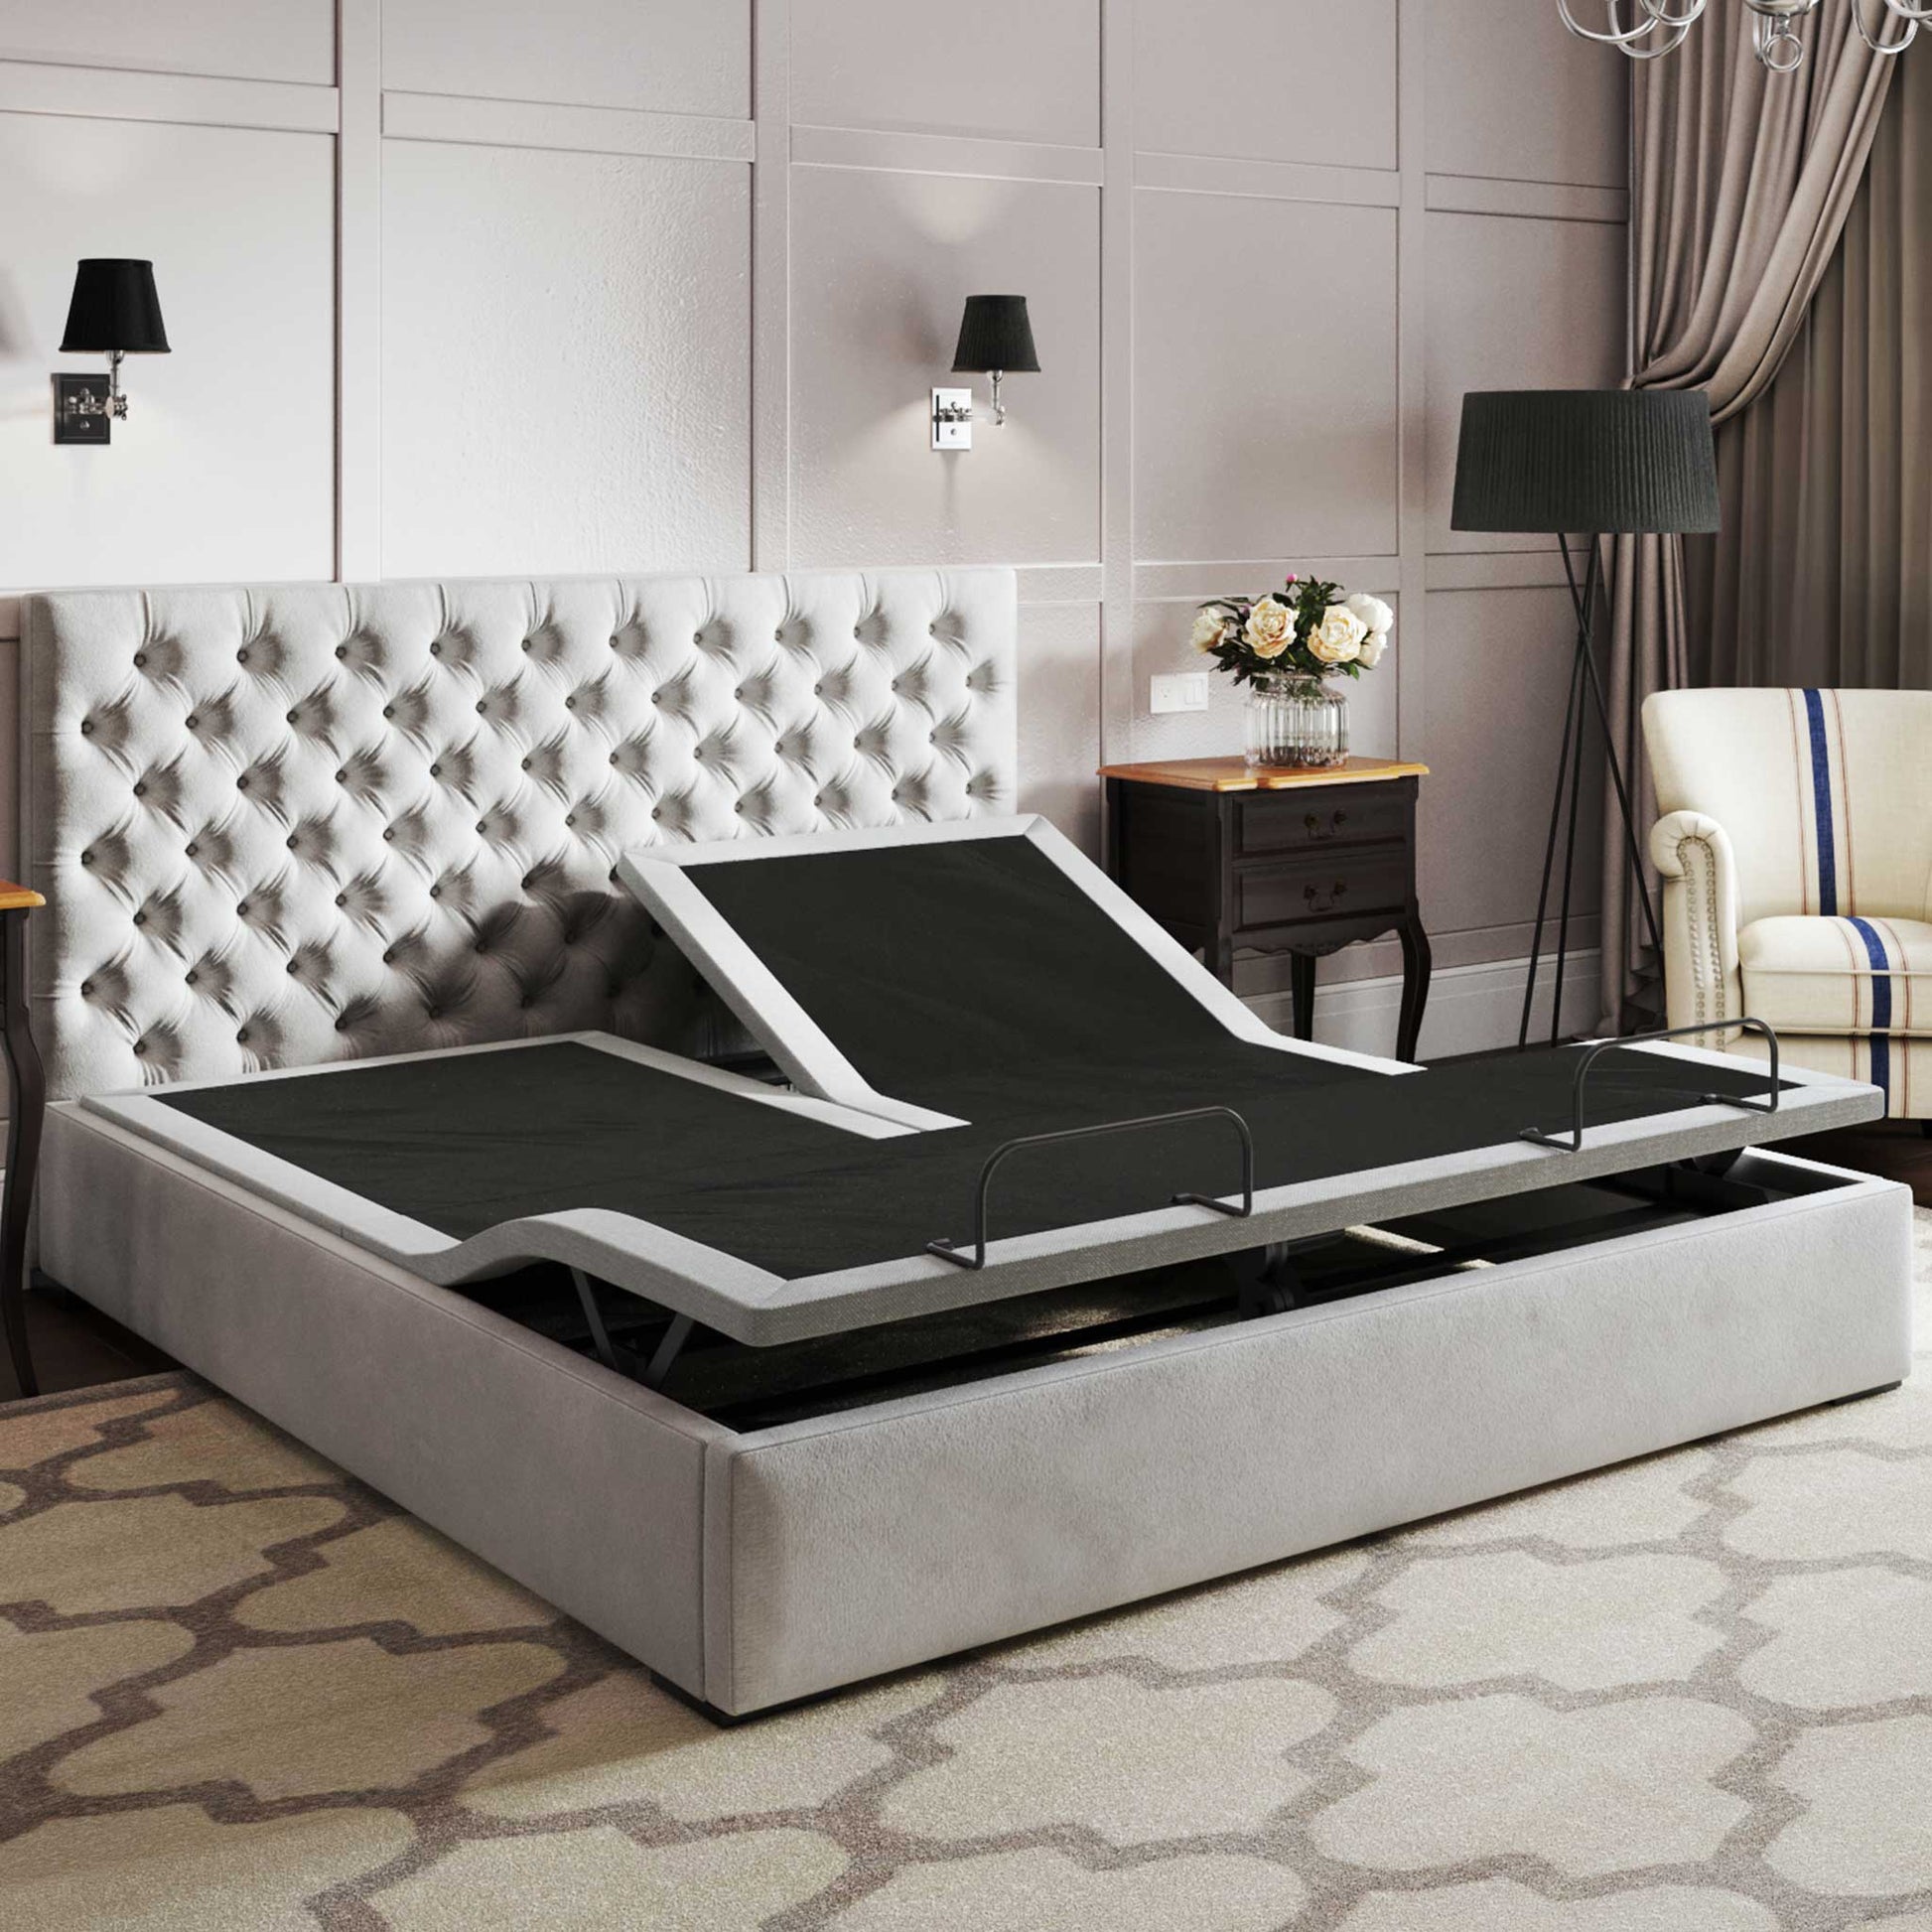 BTX5 Adjustable Bed – BedTech